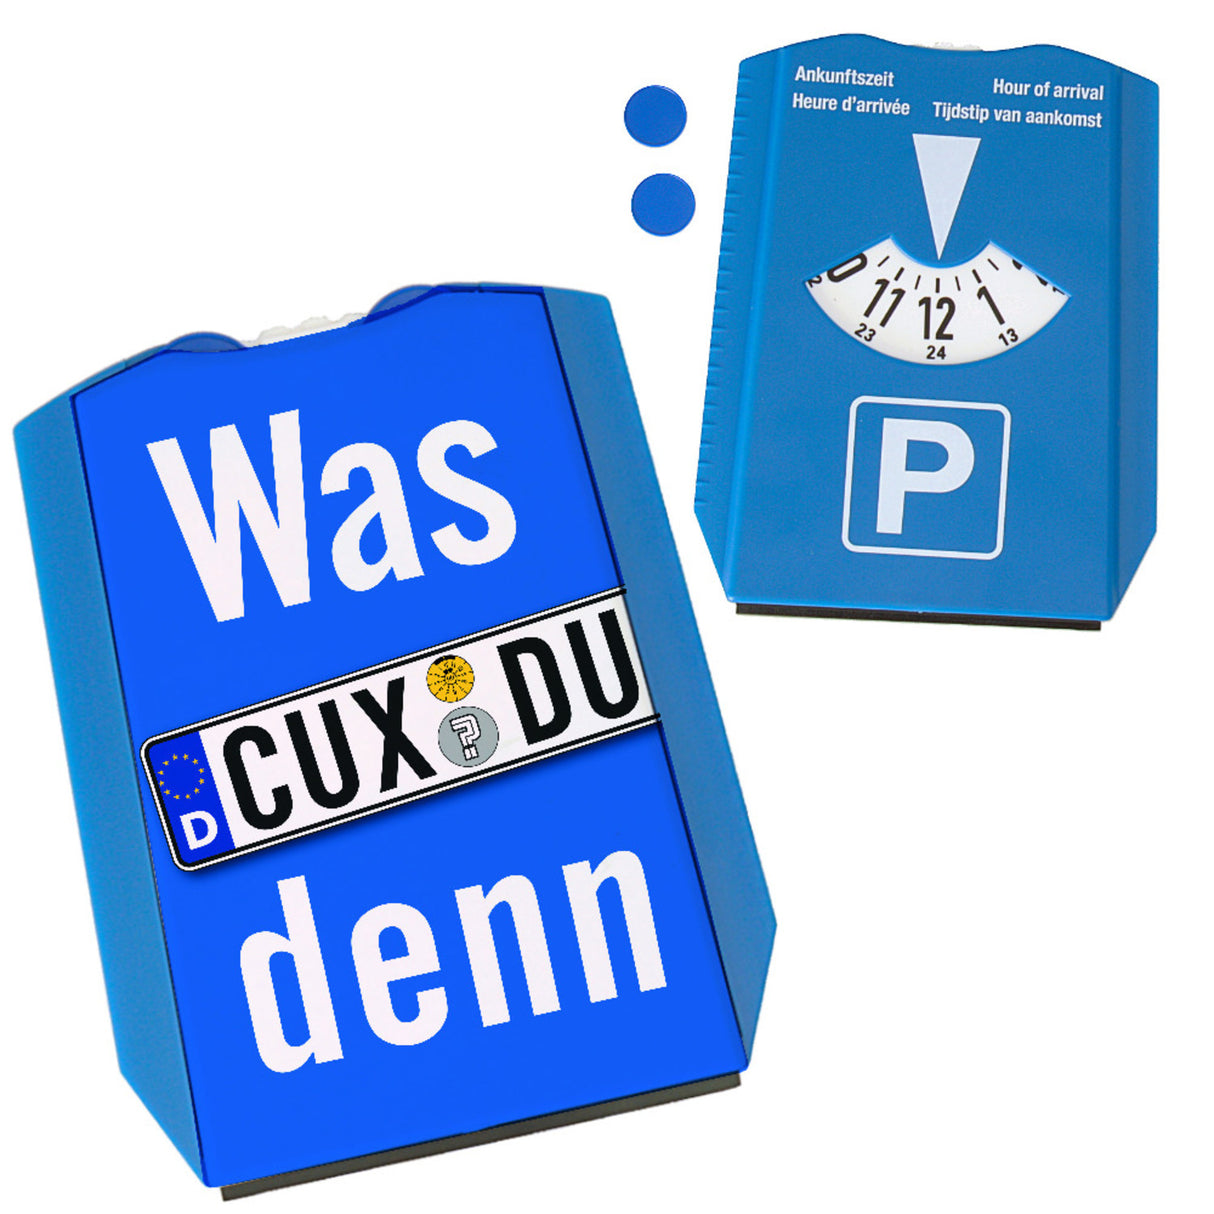 Was CUX DU denn? Parkscheibe mit Kennzeichenmotiv und 2 Einkaufswagenchips